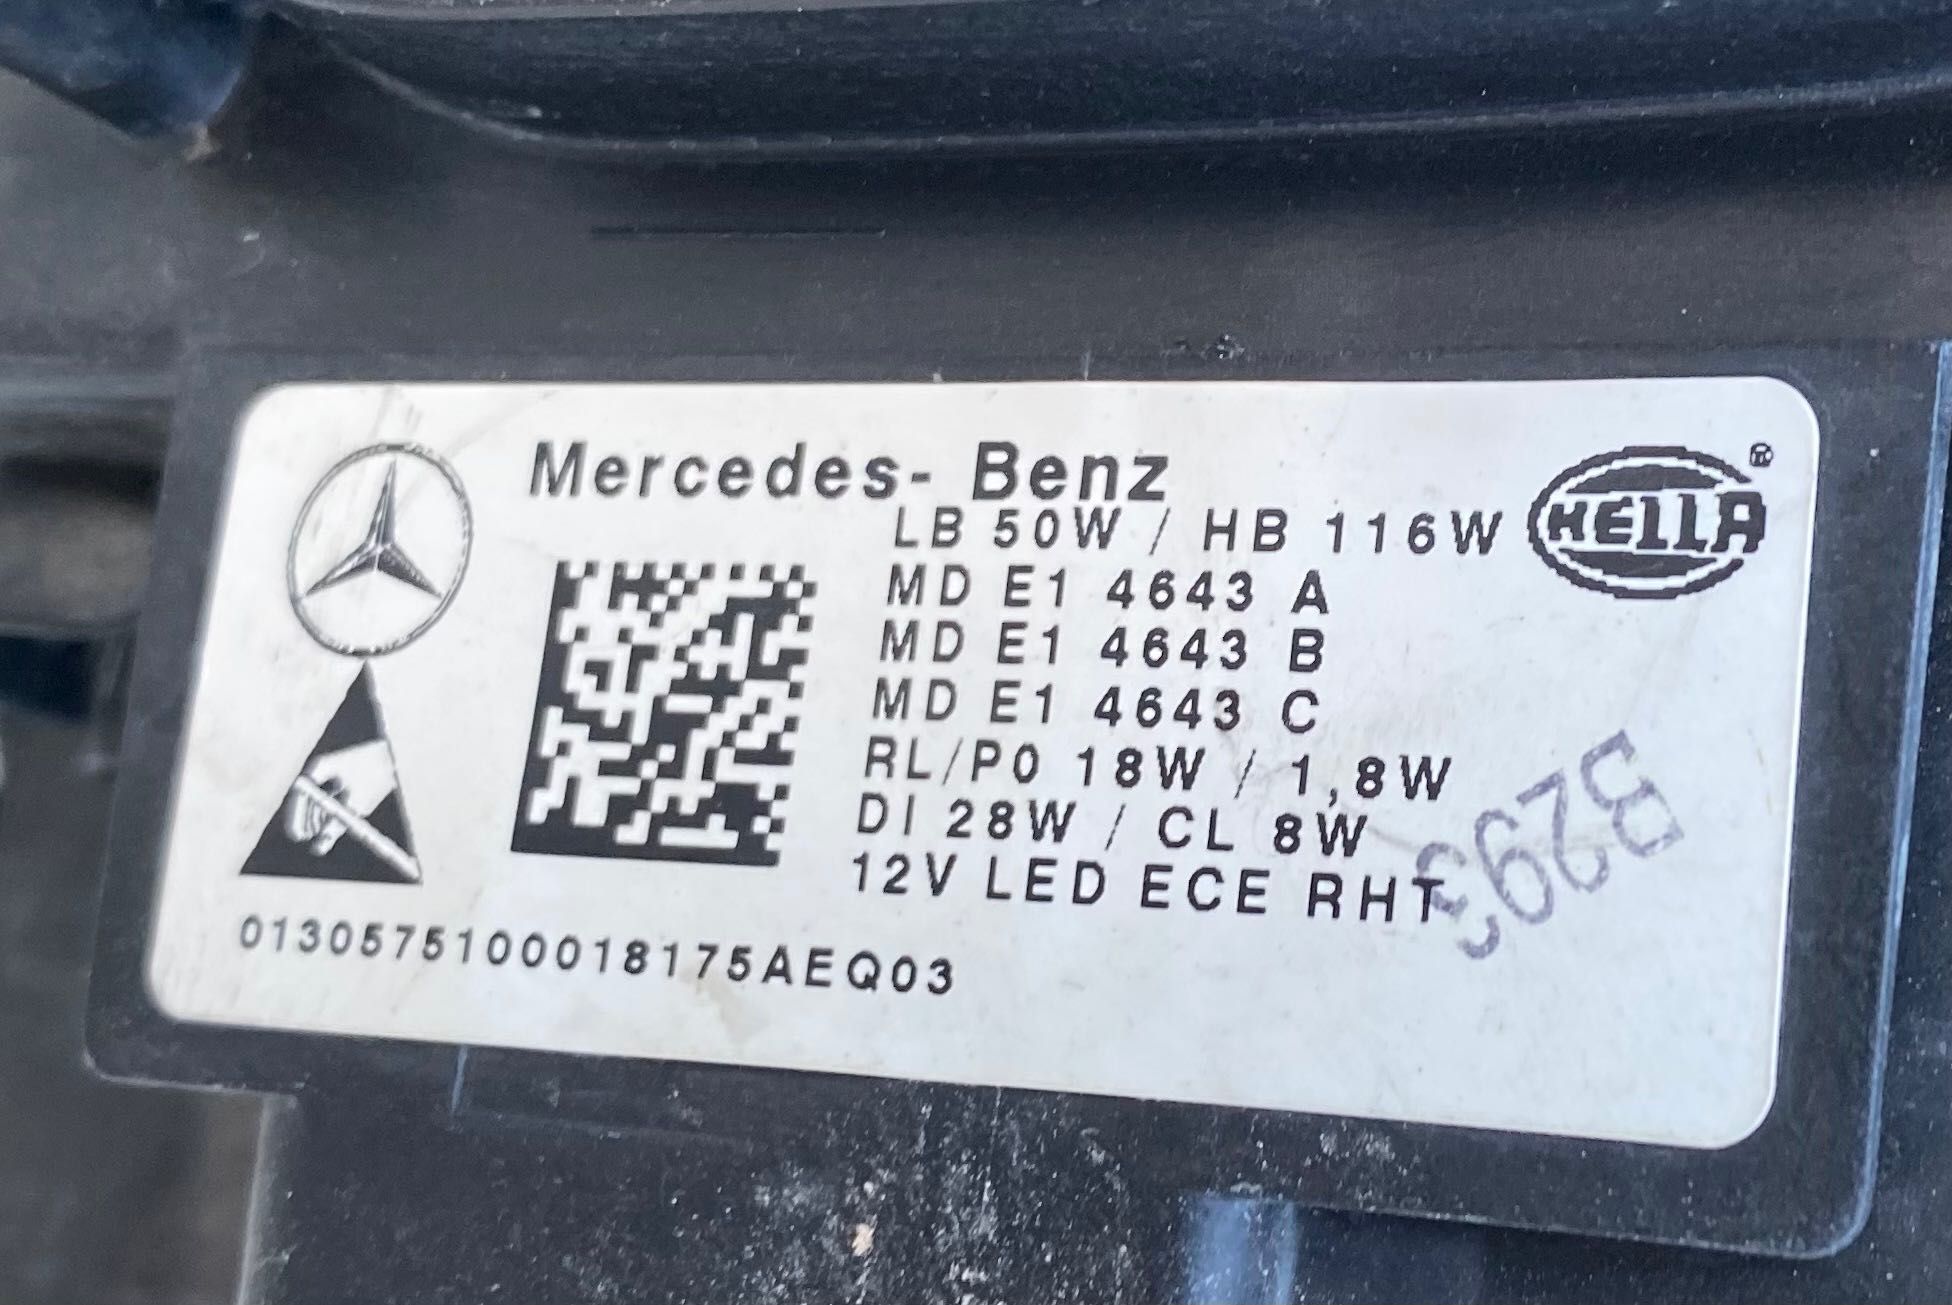 Фар ляв фарове MULTIBEAM LED за Мерцедес ЦЛС Mercedes CLS W257